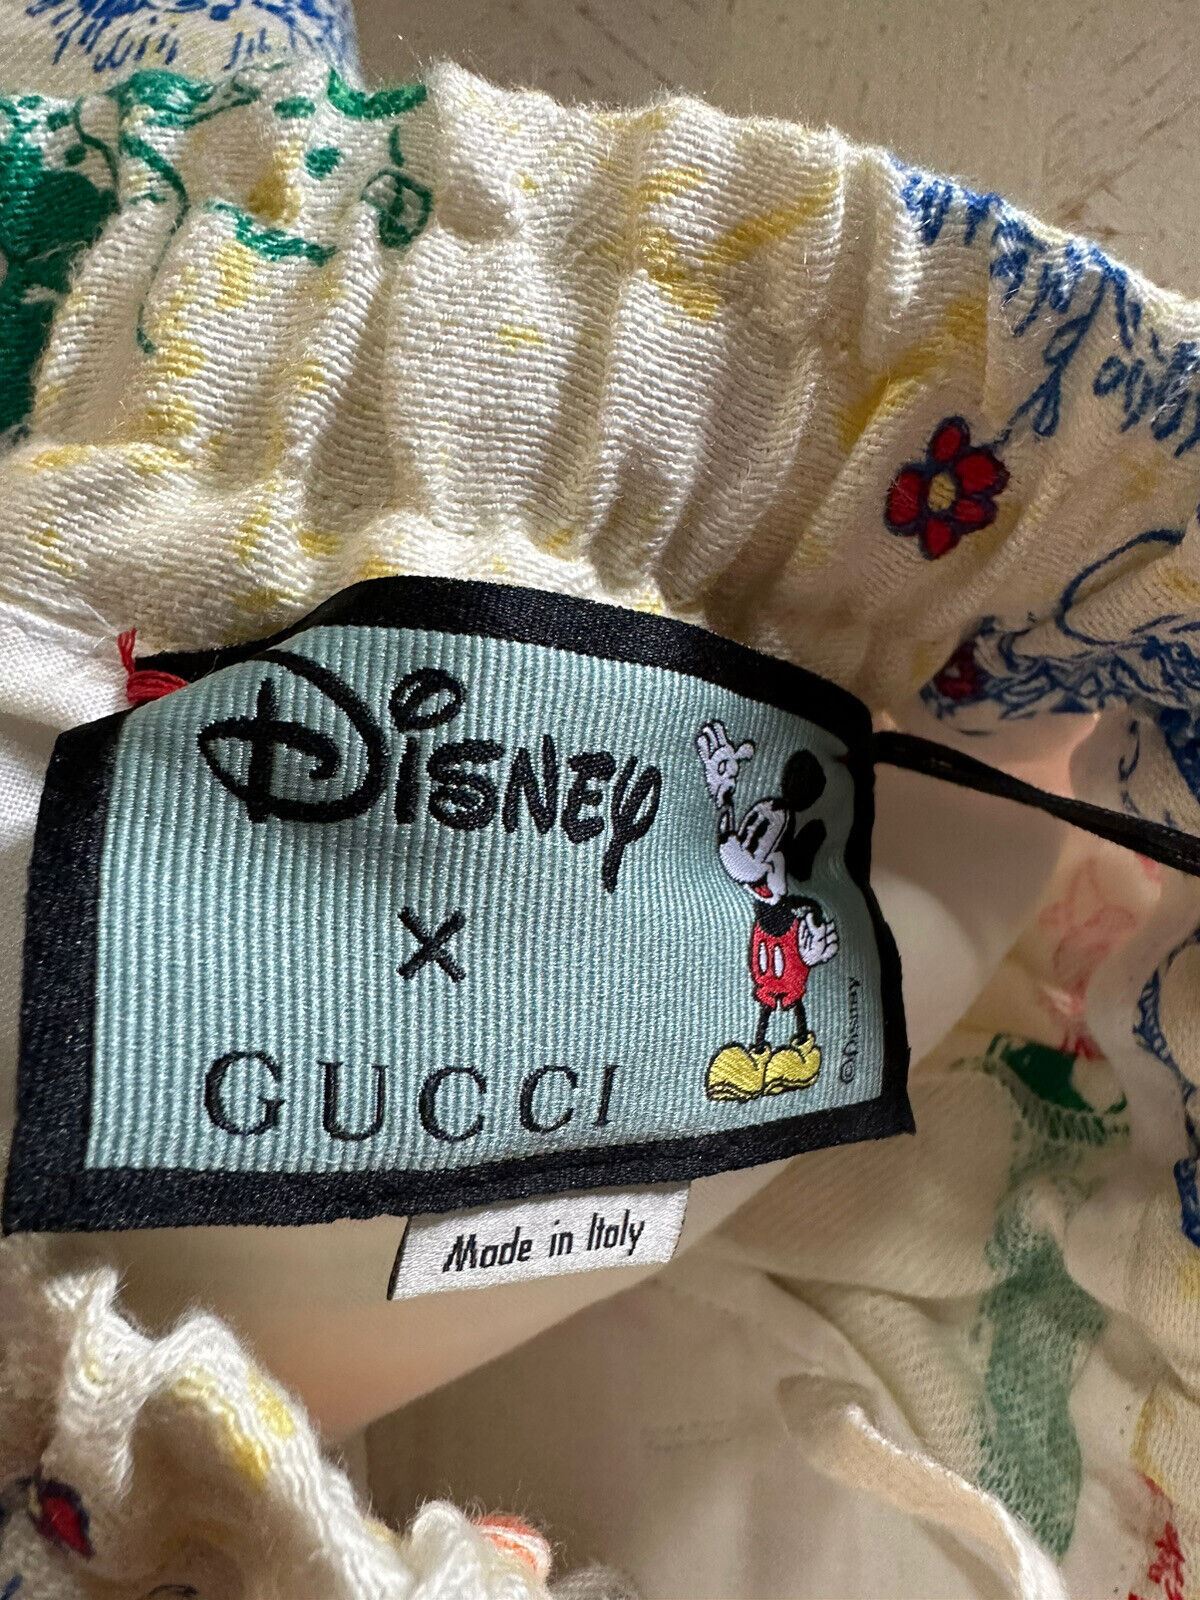 Neu mit Etikett: 1380 $ Gucci Herren-Shorts „Mickey“ aus Leinen, Elfenbeinfarben, 32 US/48 Eu